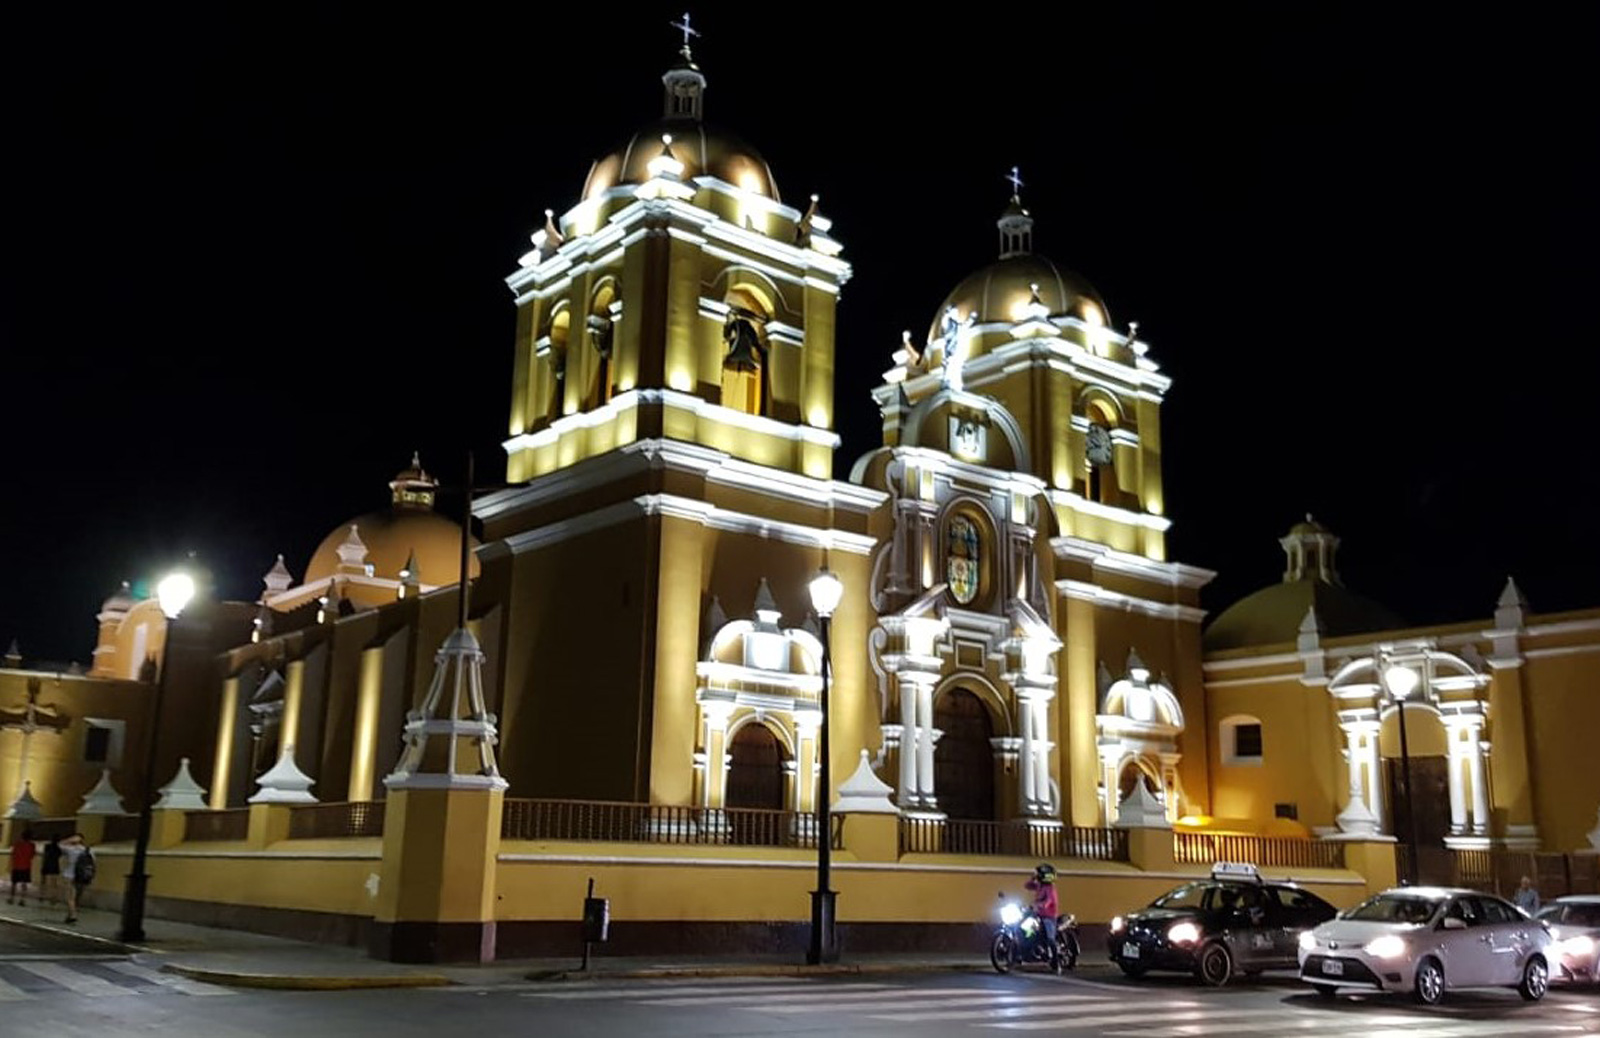 Remodelación de redes subterráneas e iluminación de Centro Histórico de Trujillo
HIDRANDINA